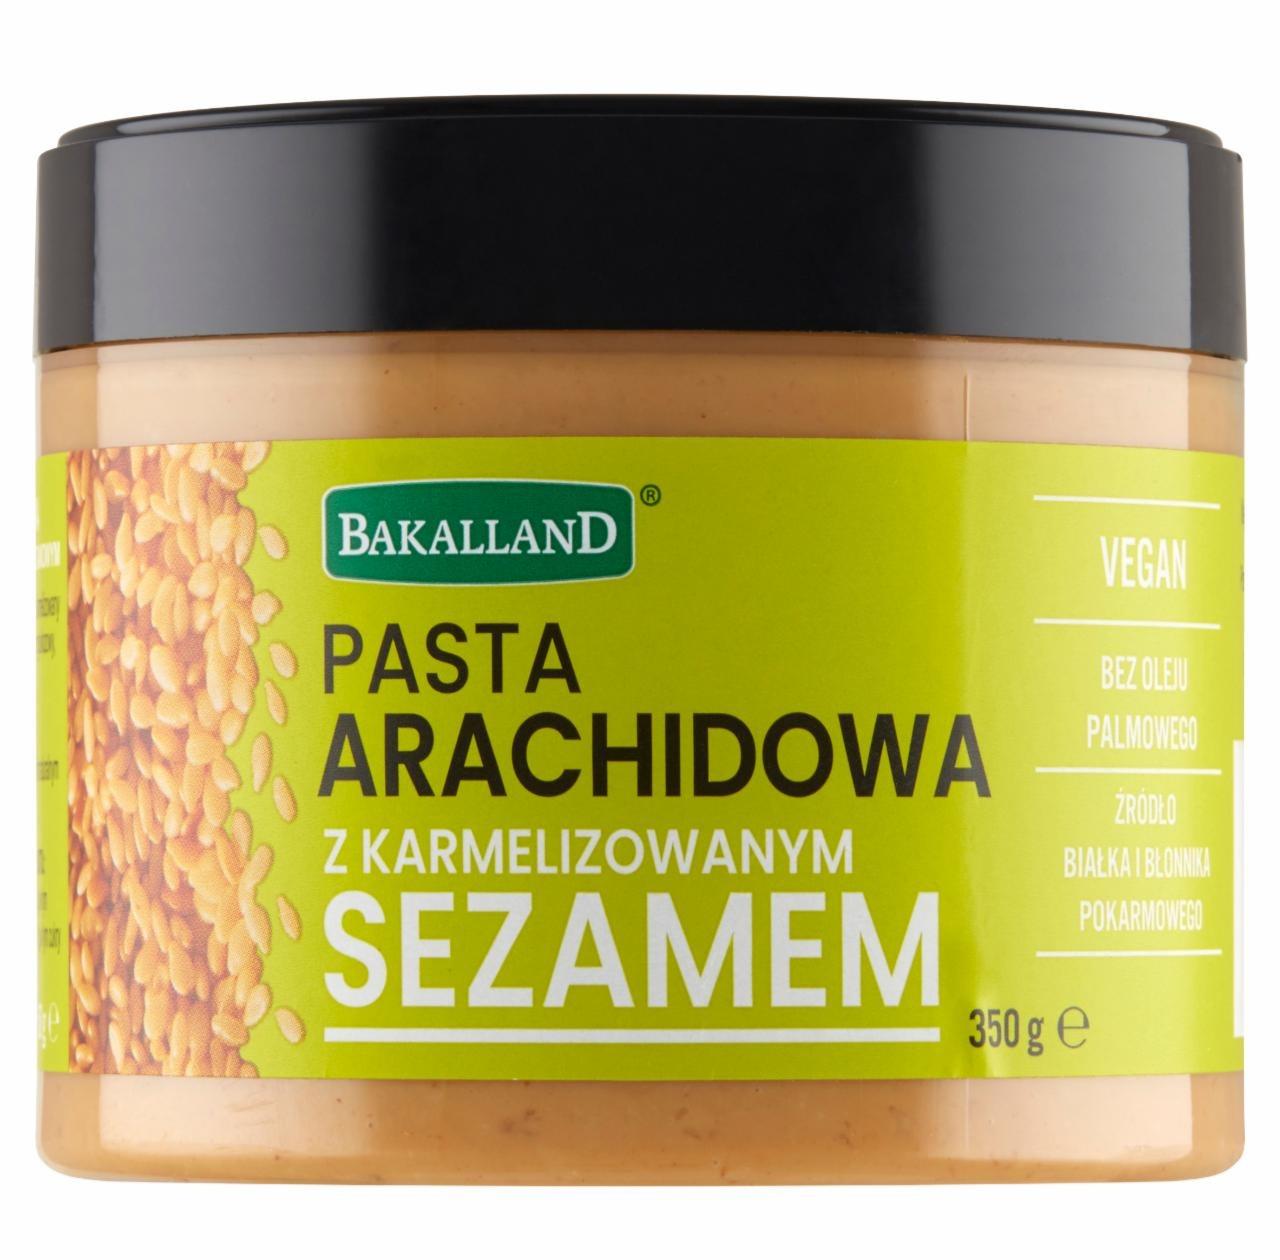 Zdjęcia - Pasta arachidowa z karmelizowanym sezamem Bakalland